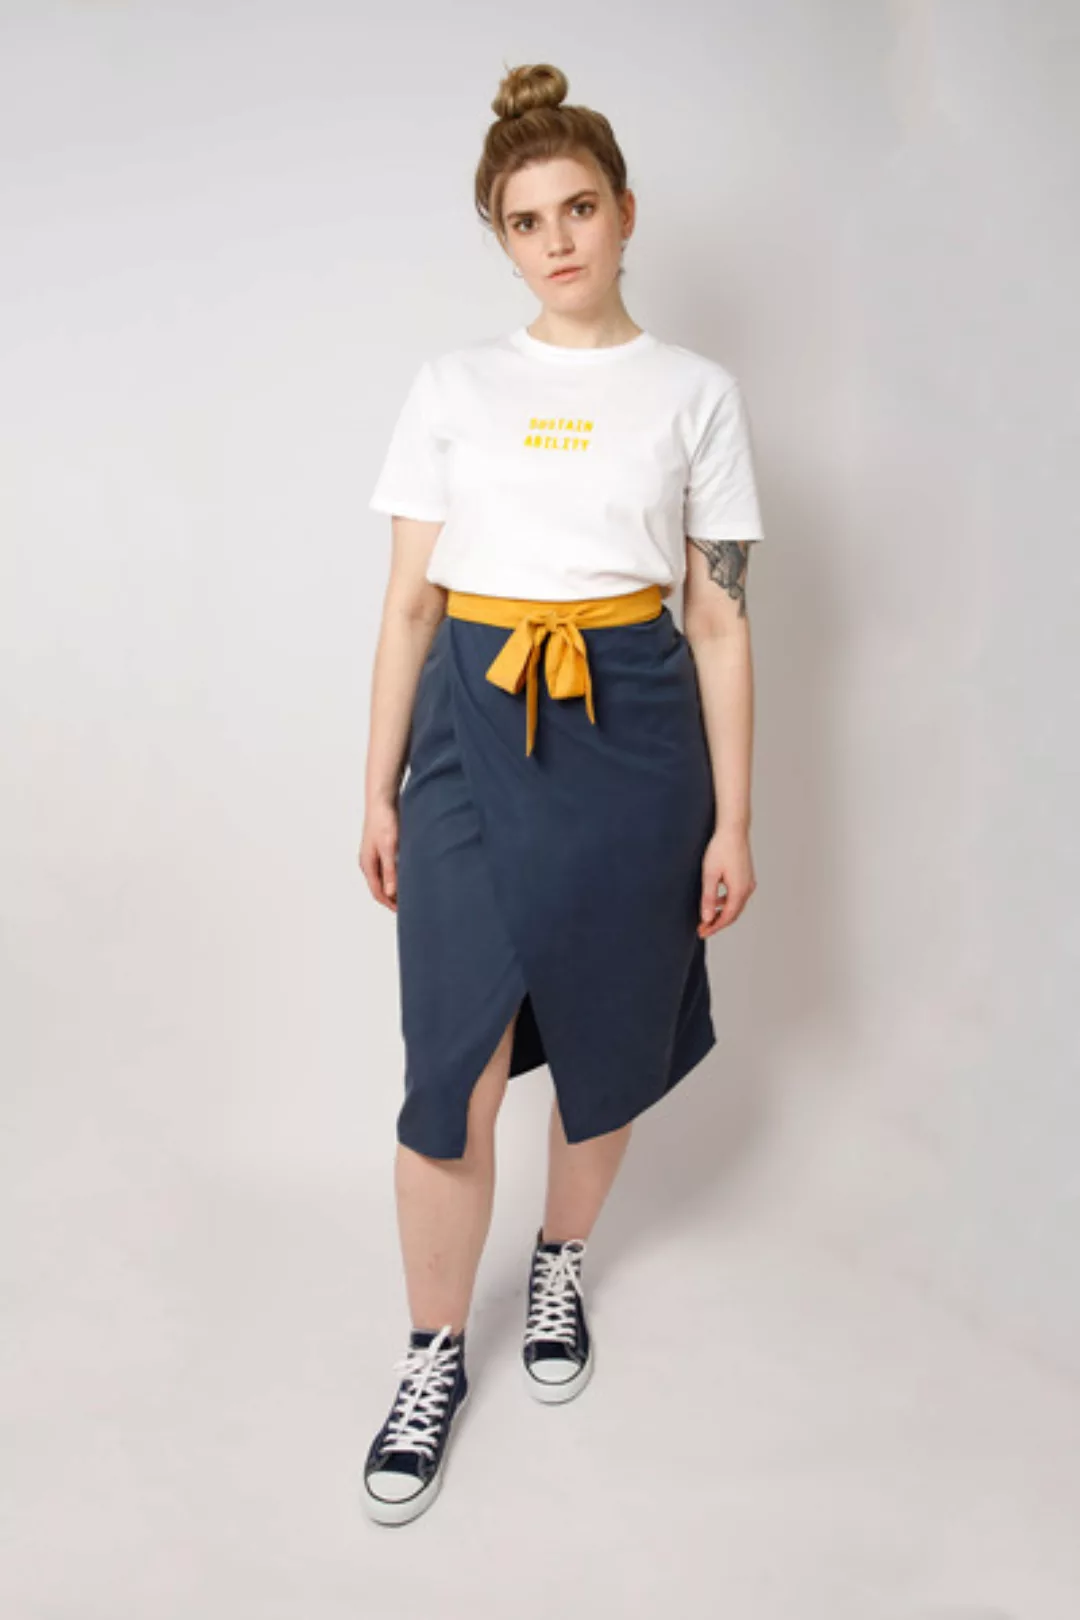 Damen Bio-baumwoll Shirt Mit Siebdruck, Weiß günstig online kaufen